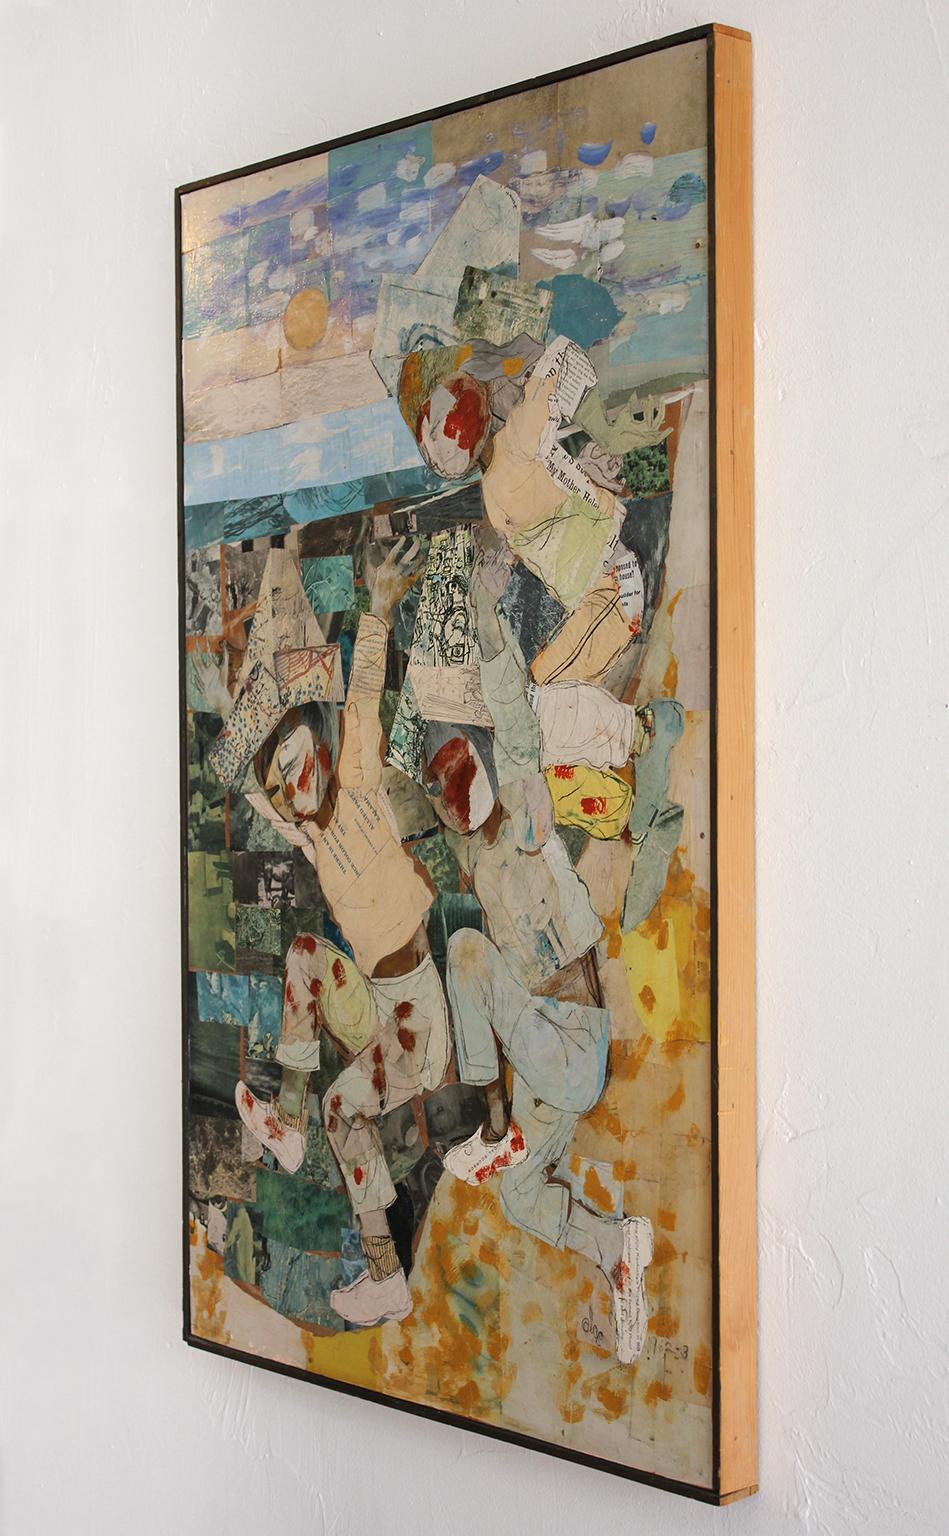 Großartiges Gemälde und Collage in Mischtechnik von der kalifornischen Künstlerin Olga Higgins, um 1962. Vom Künstler signiert und datiert. Tolles abstraktes Design. Die Farben sind großartig. Hängt in seinem ursprünglichen Rahmen. Maße: 42